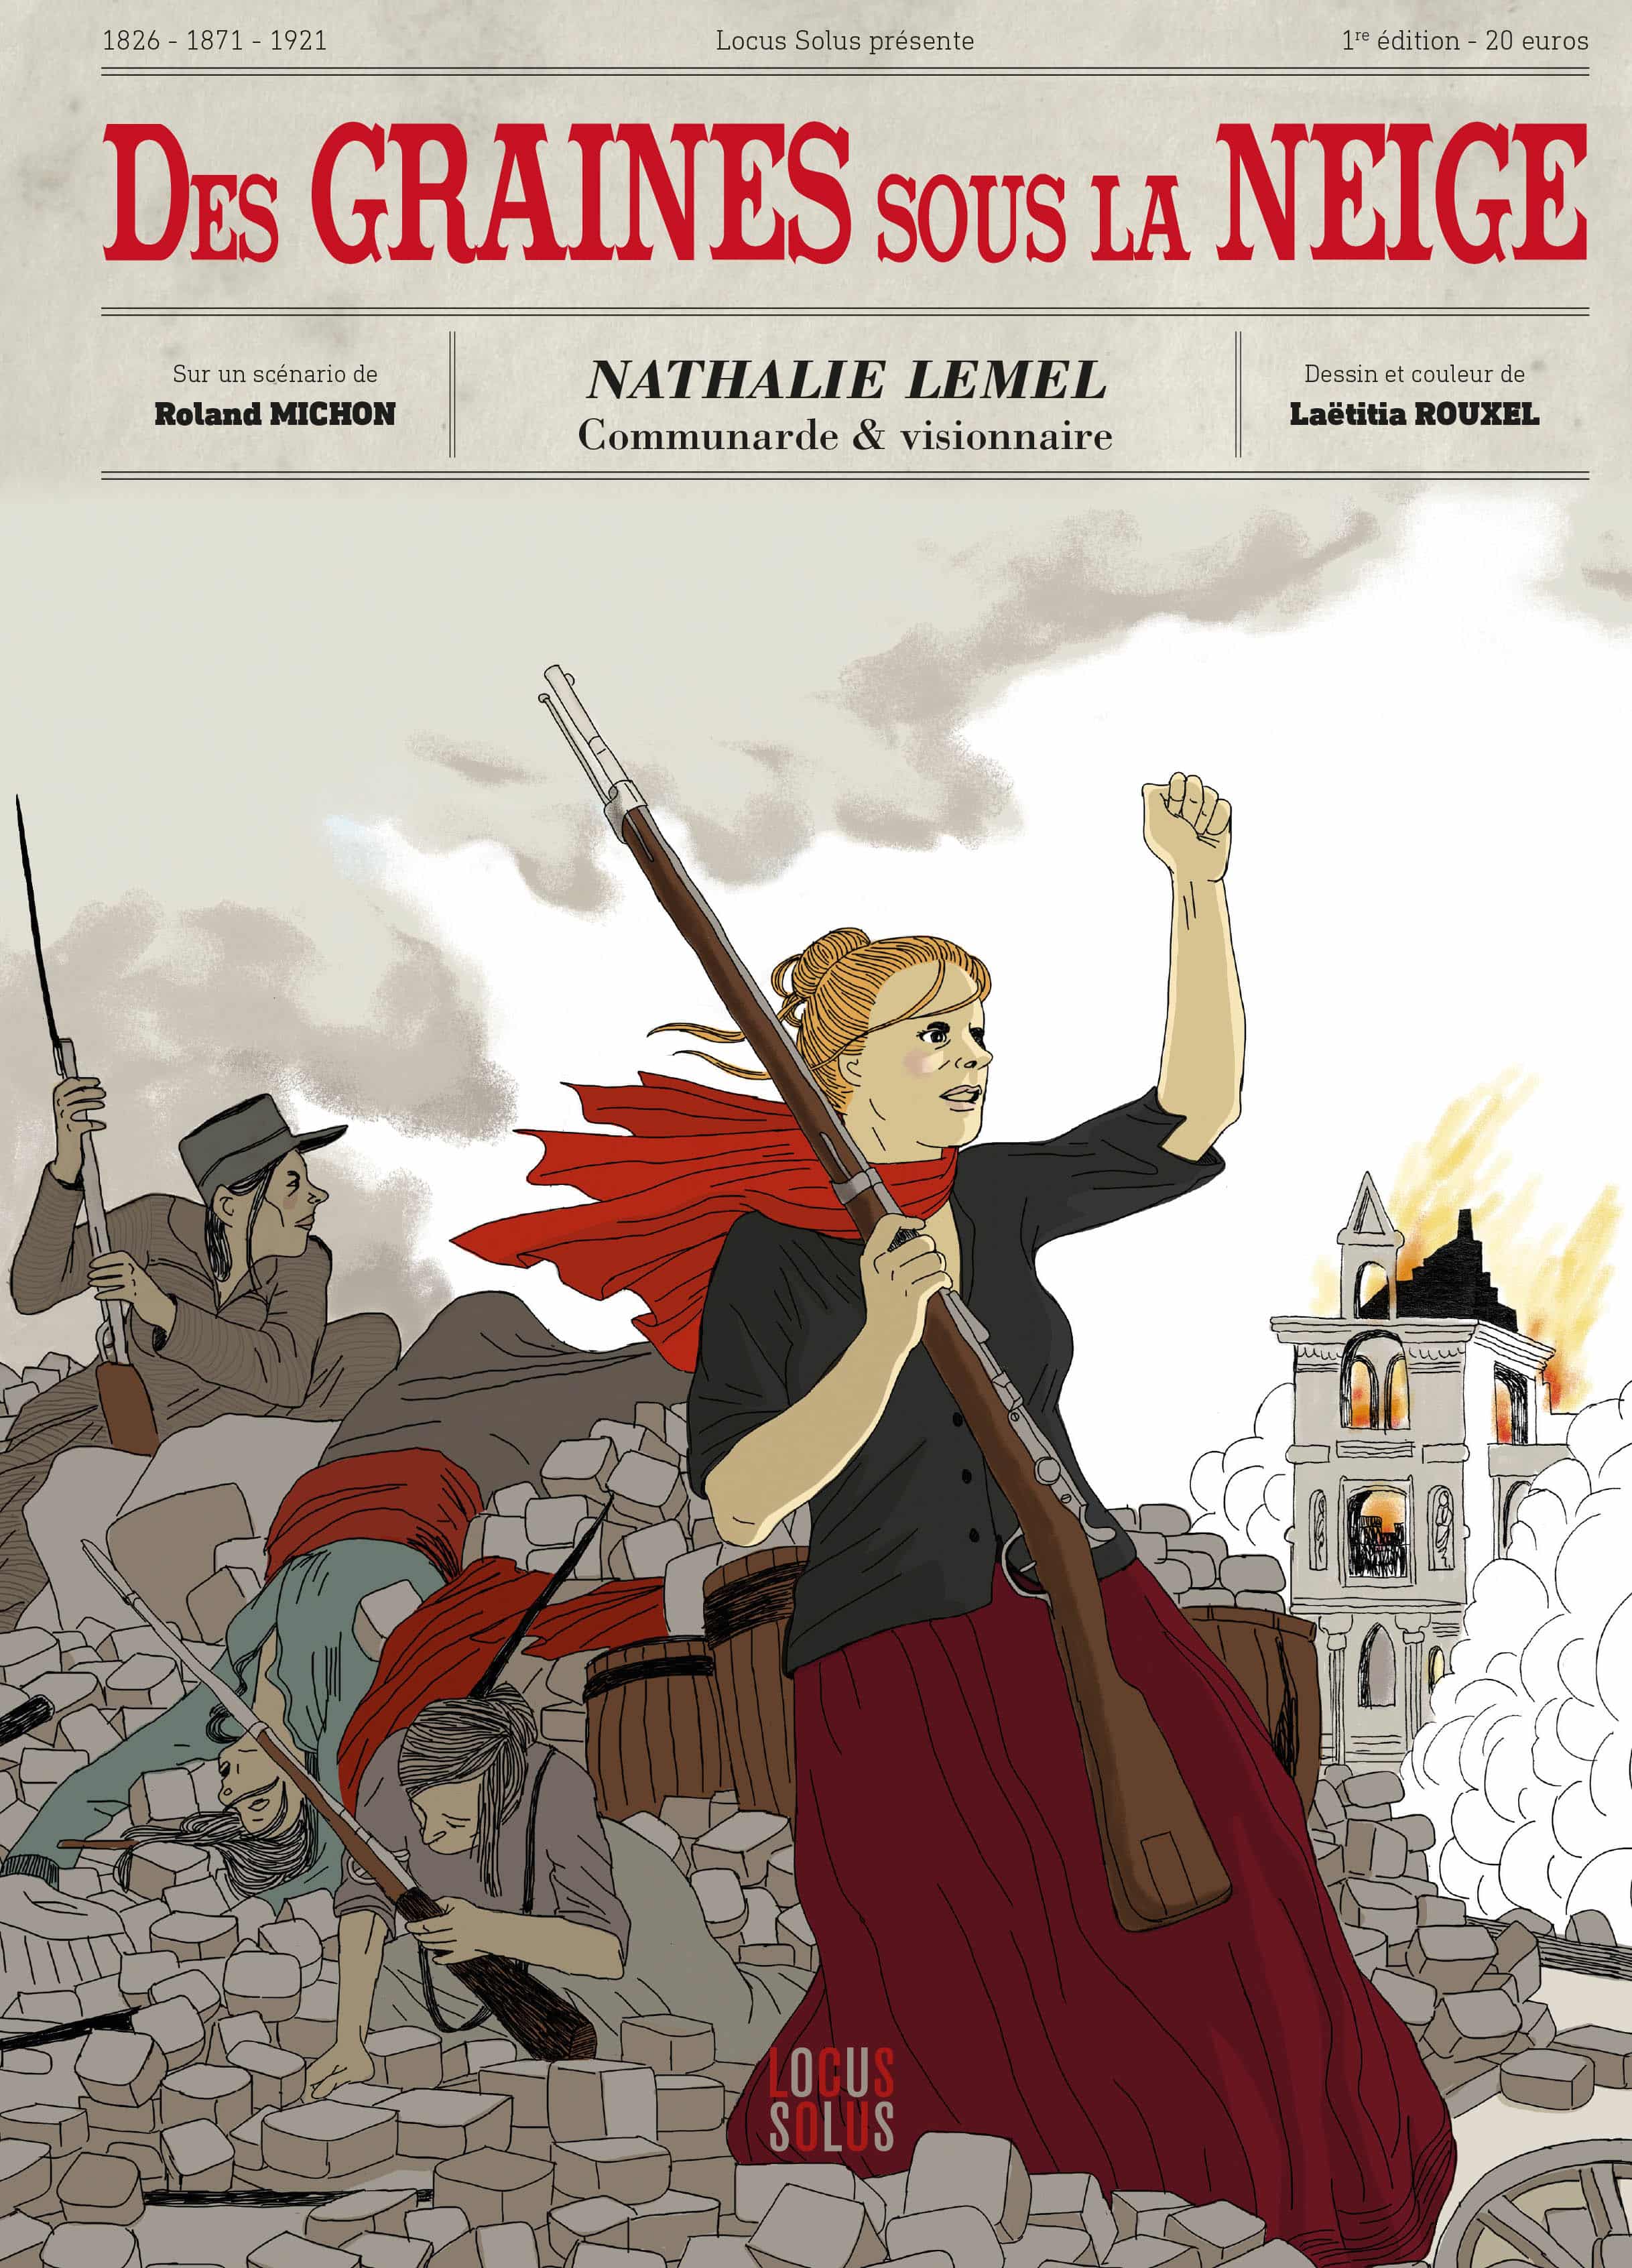 Des Graines sous la neige, Nathalie Lemel figure de la Commune - Ligne Claire (Blog)